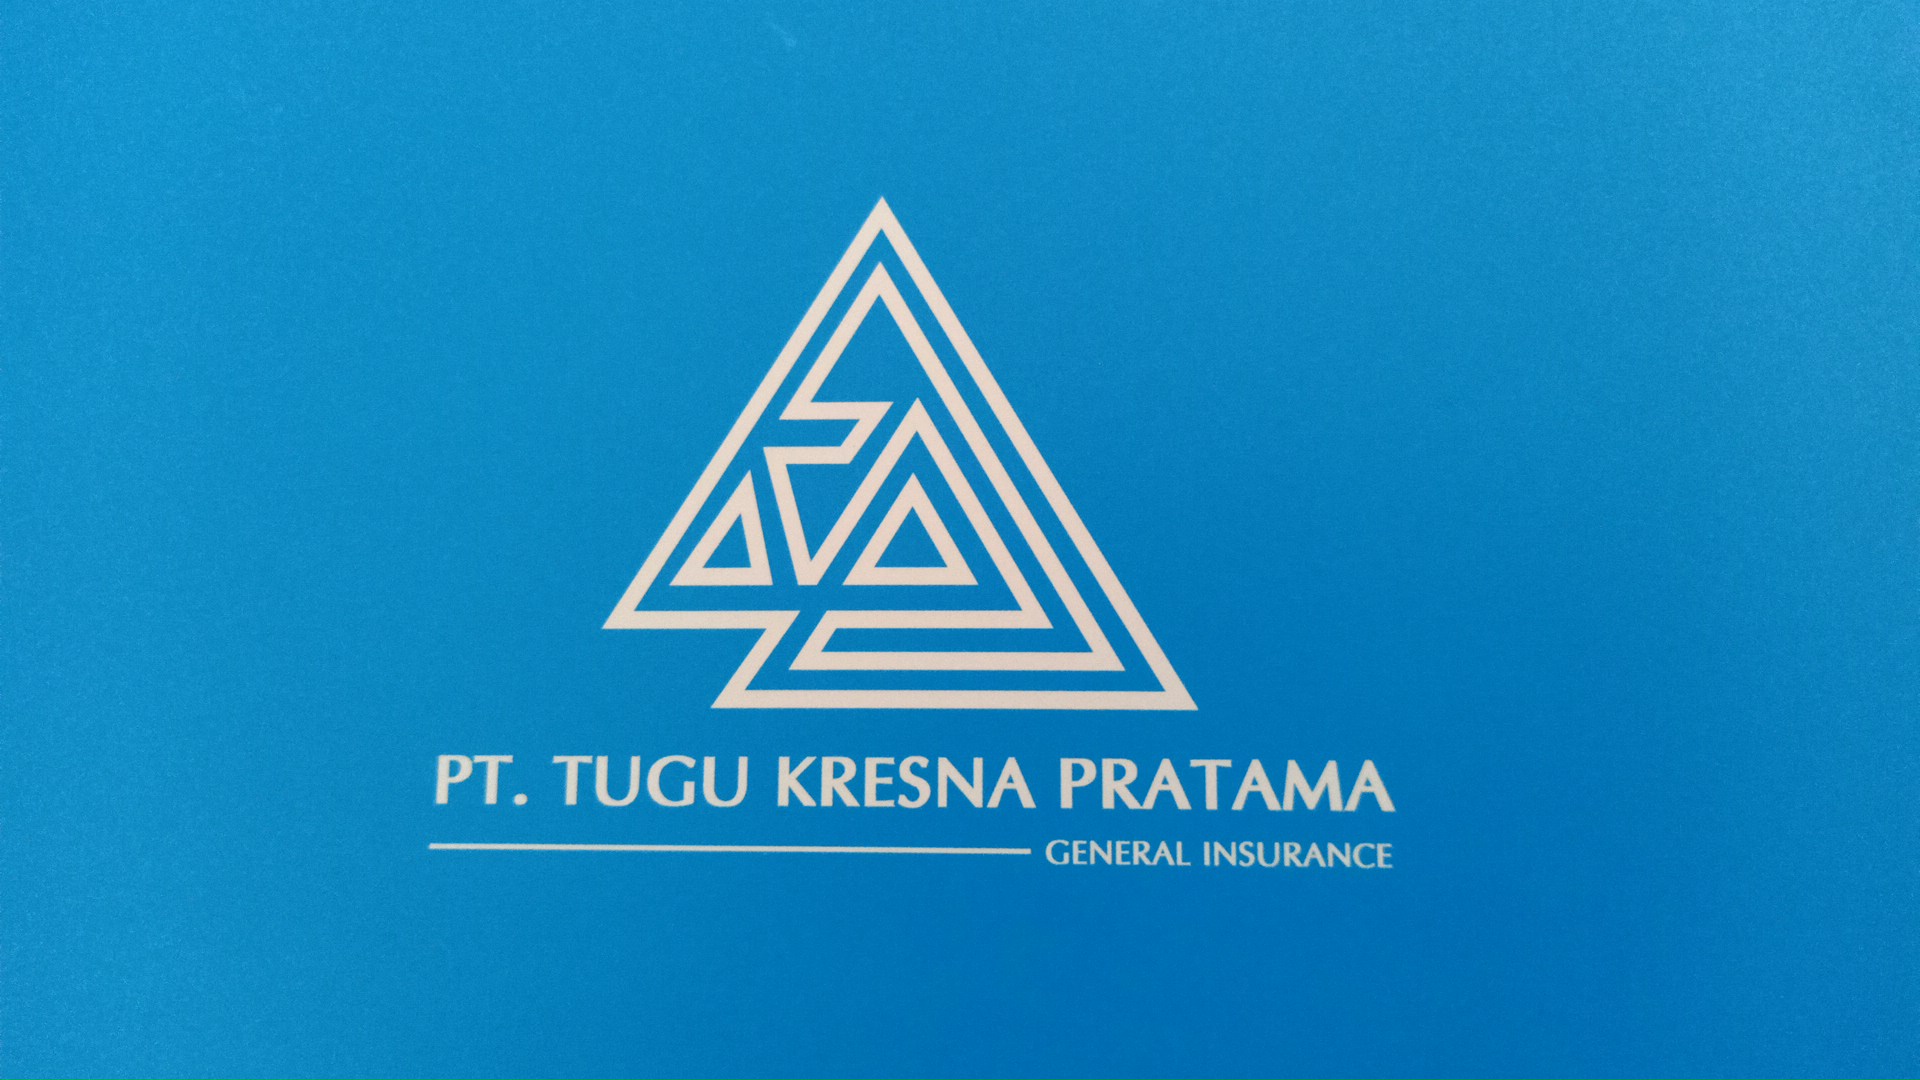 Gambar Pt. Asuransi Tugu Kresna Pratama